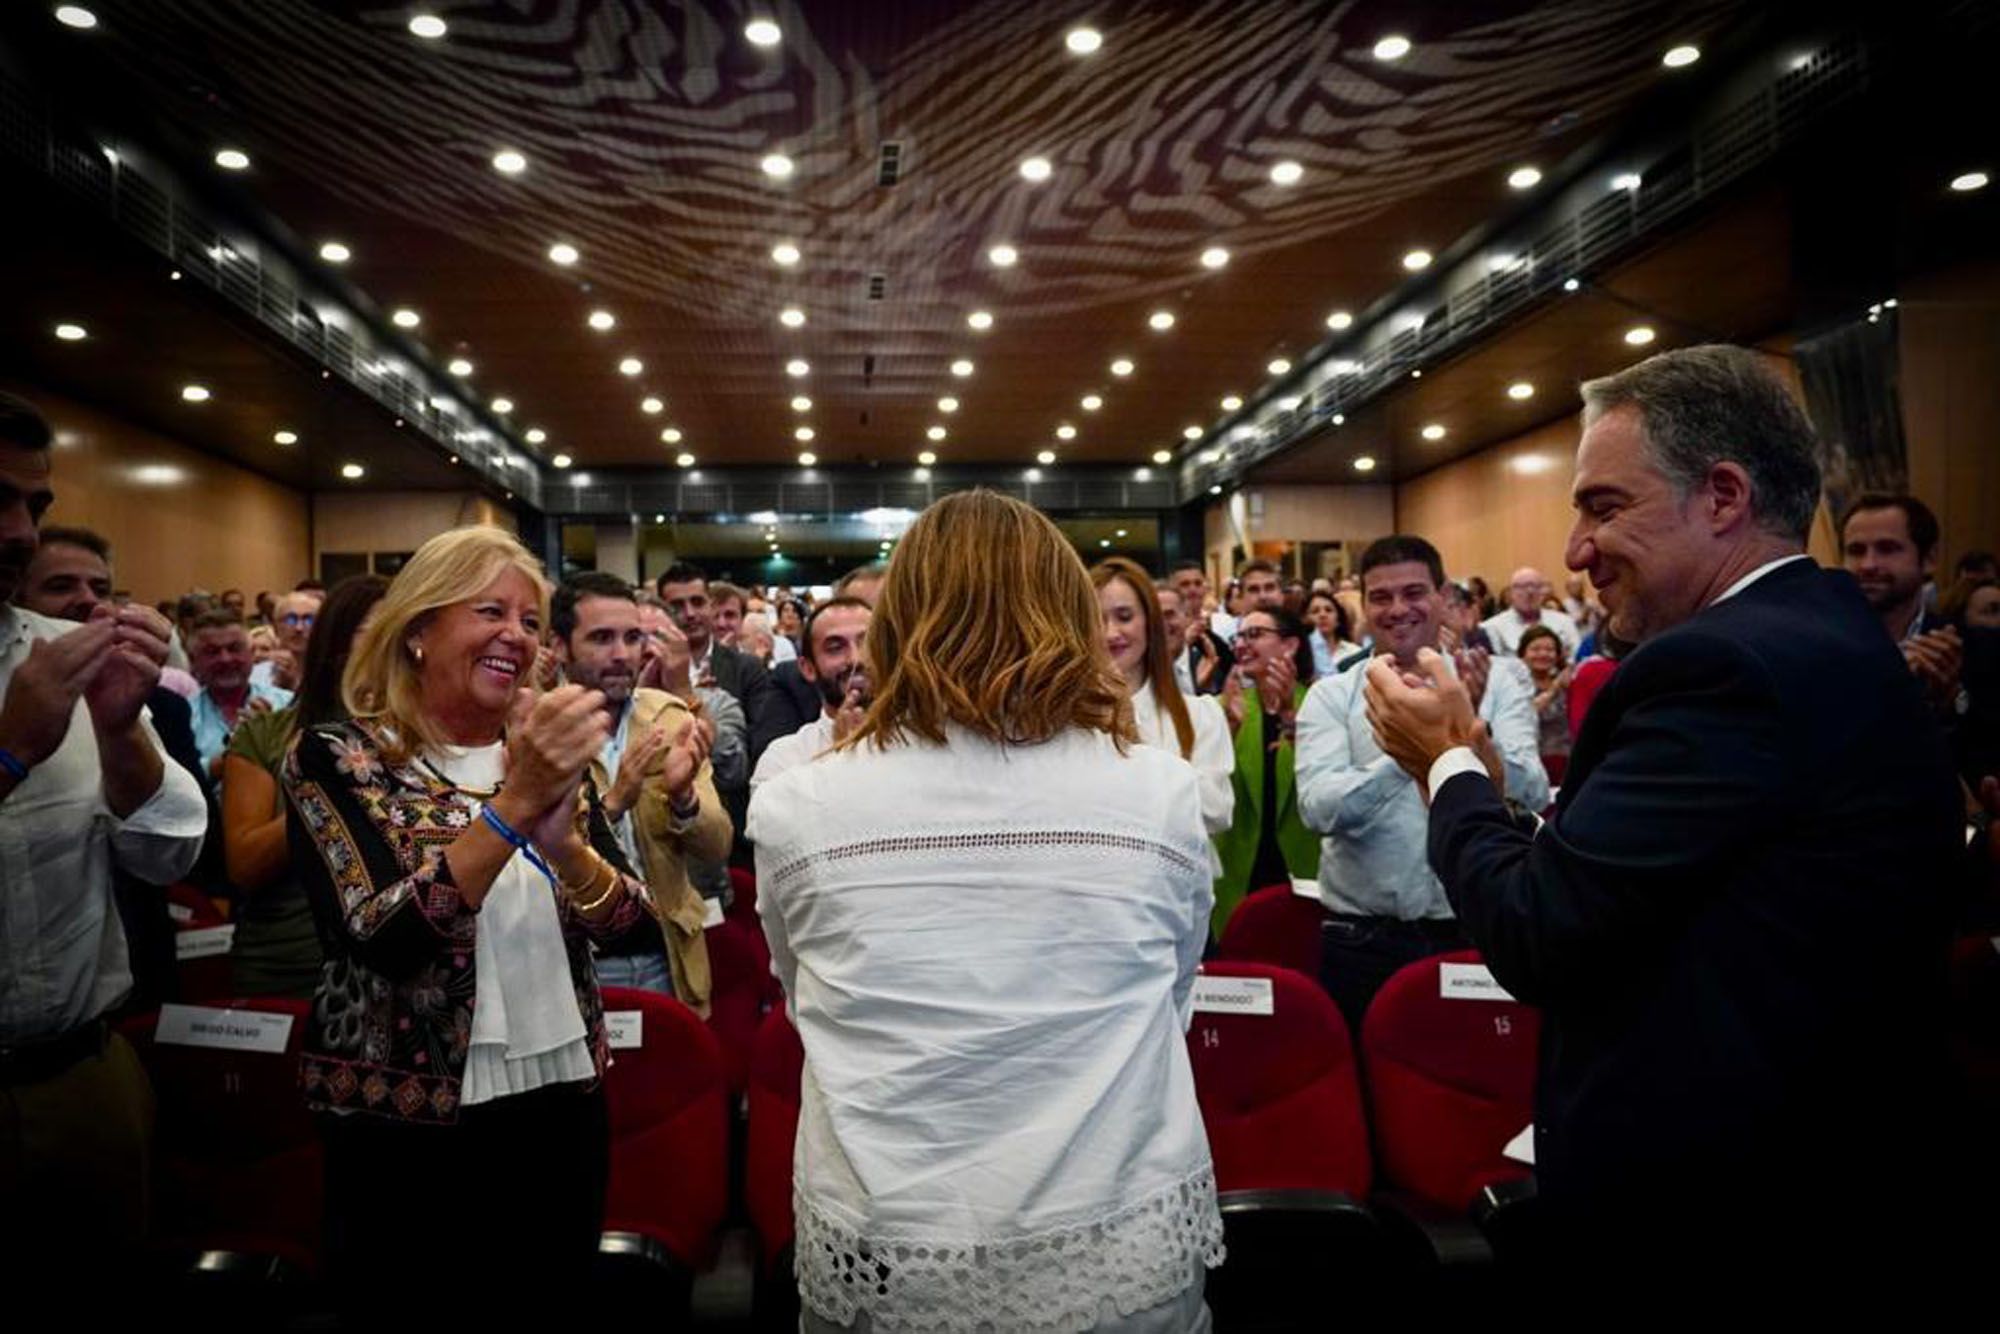 El XIV Congreso Provincial del PP de Málaga, en imágenes